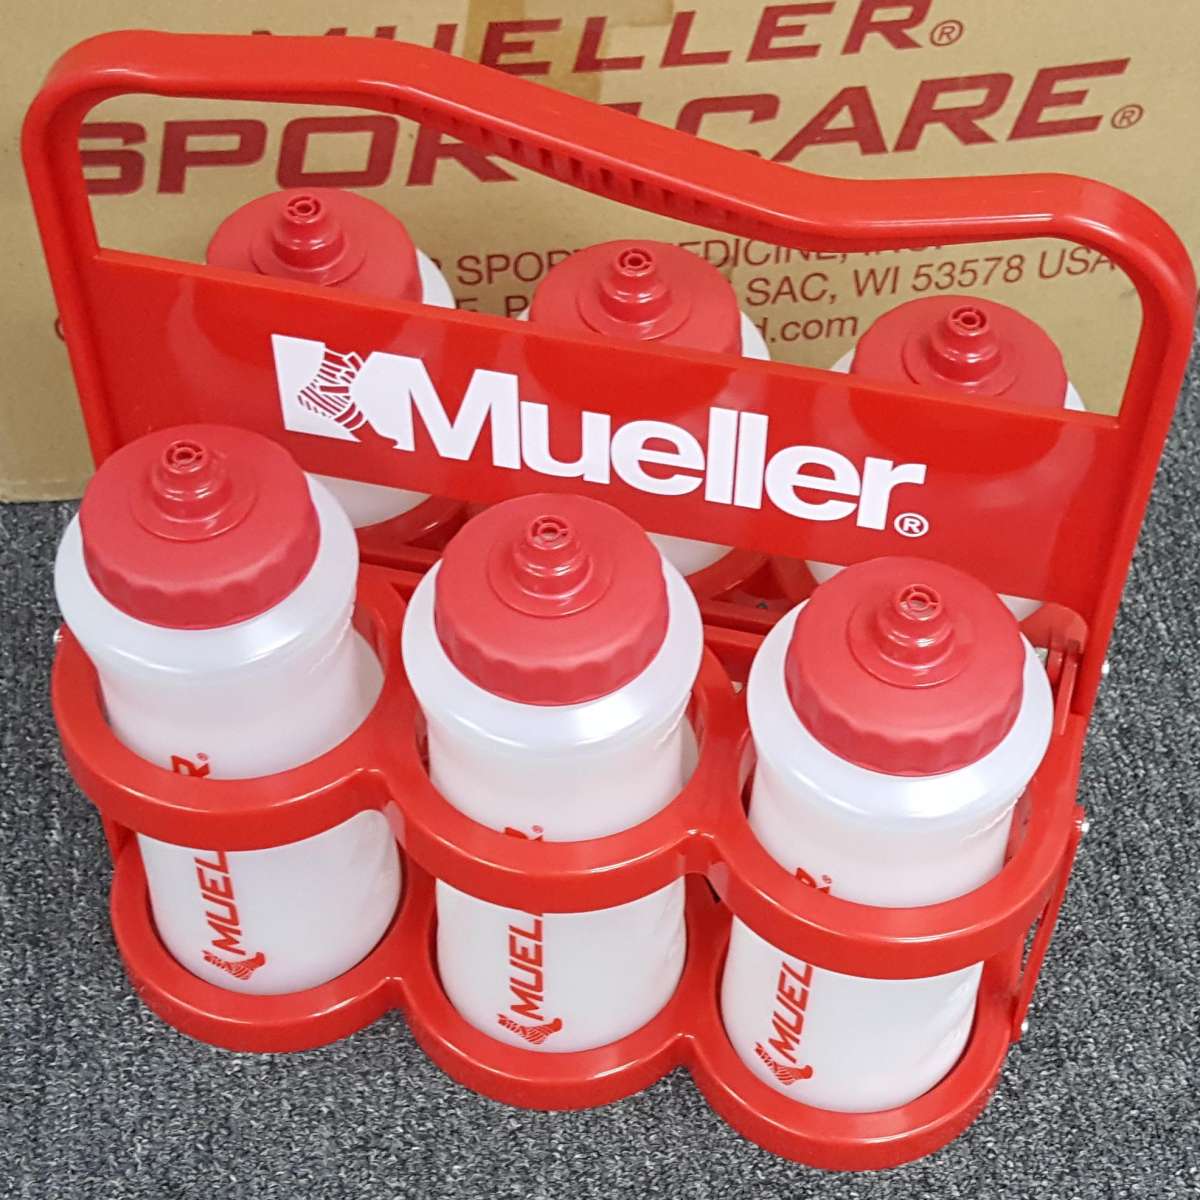 Mueller Water Bottle Carrier: 919111